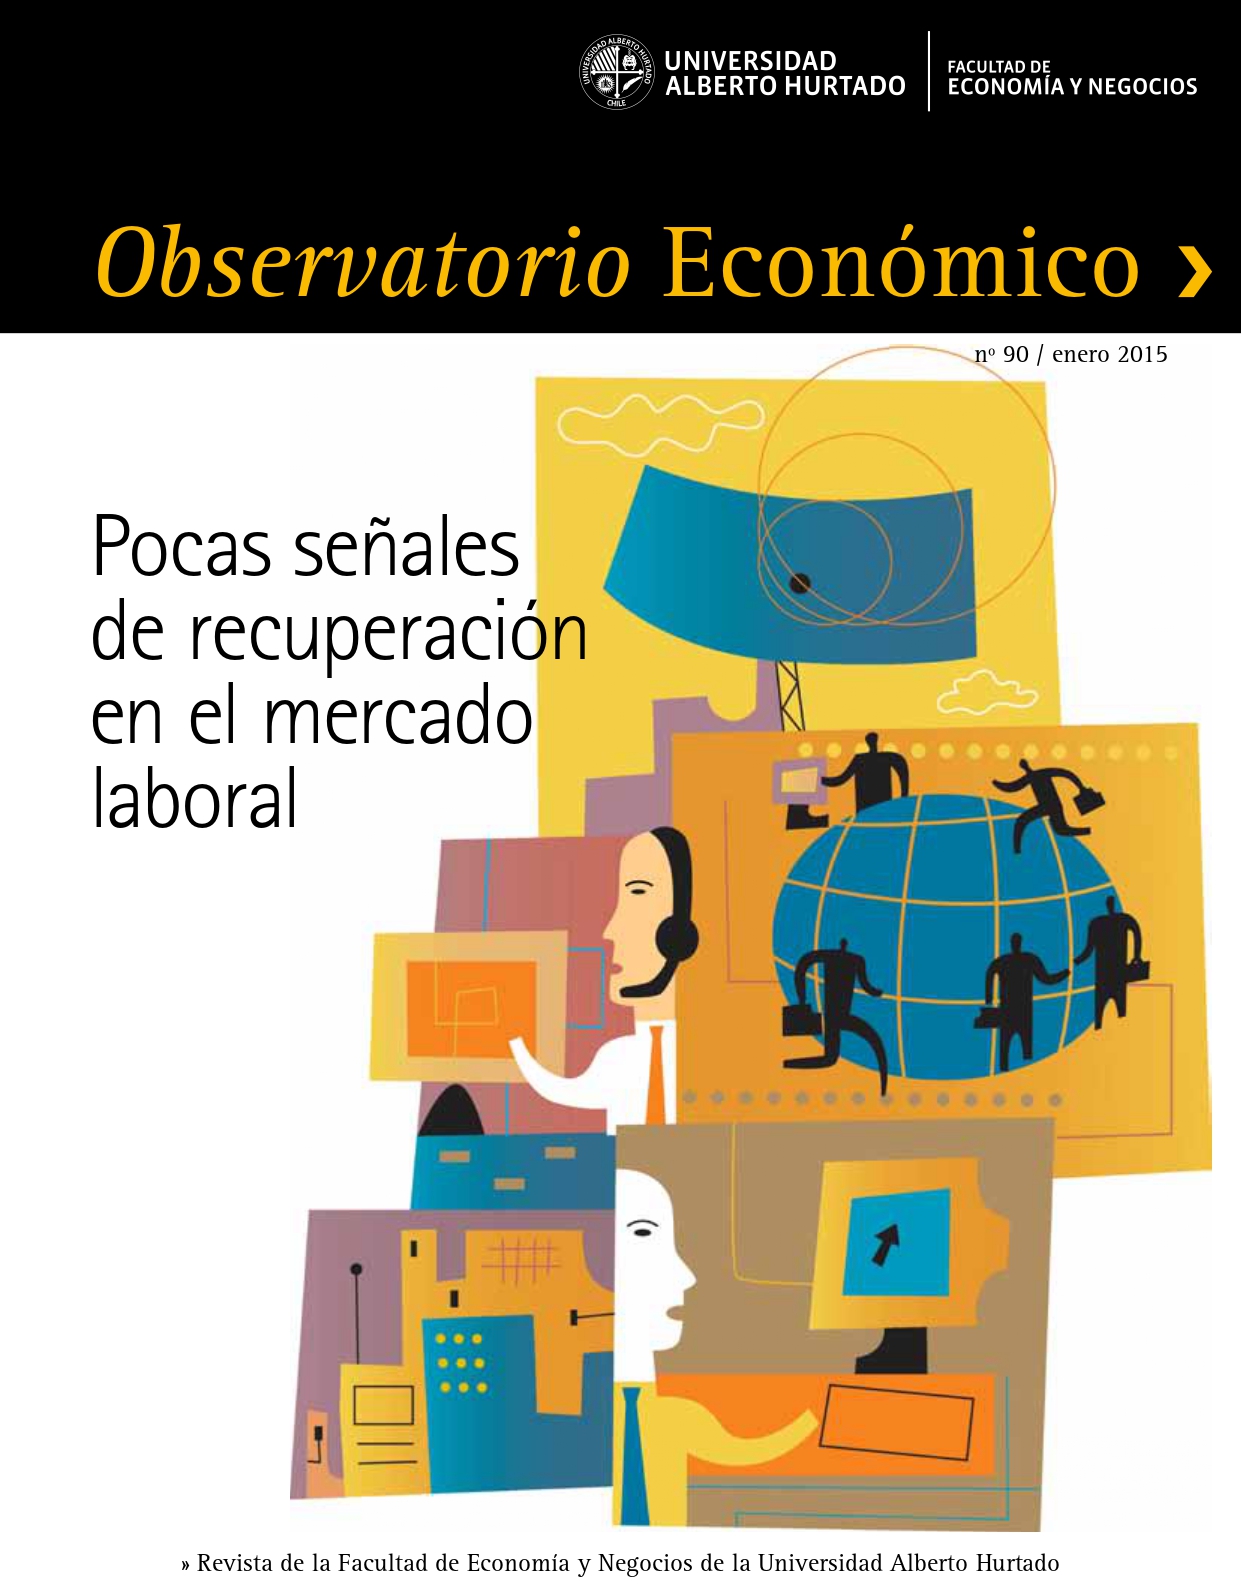 Título del número de la revista : "Pocas señales de recuperación en el mercado laboral"